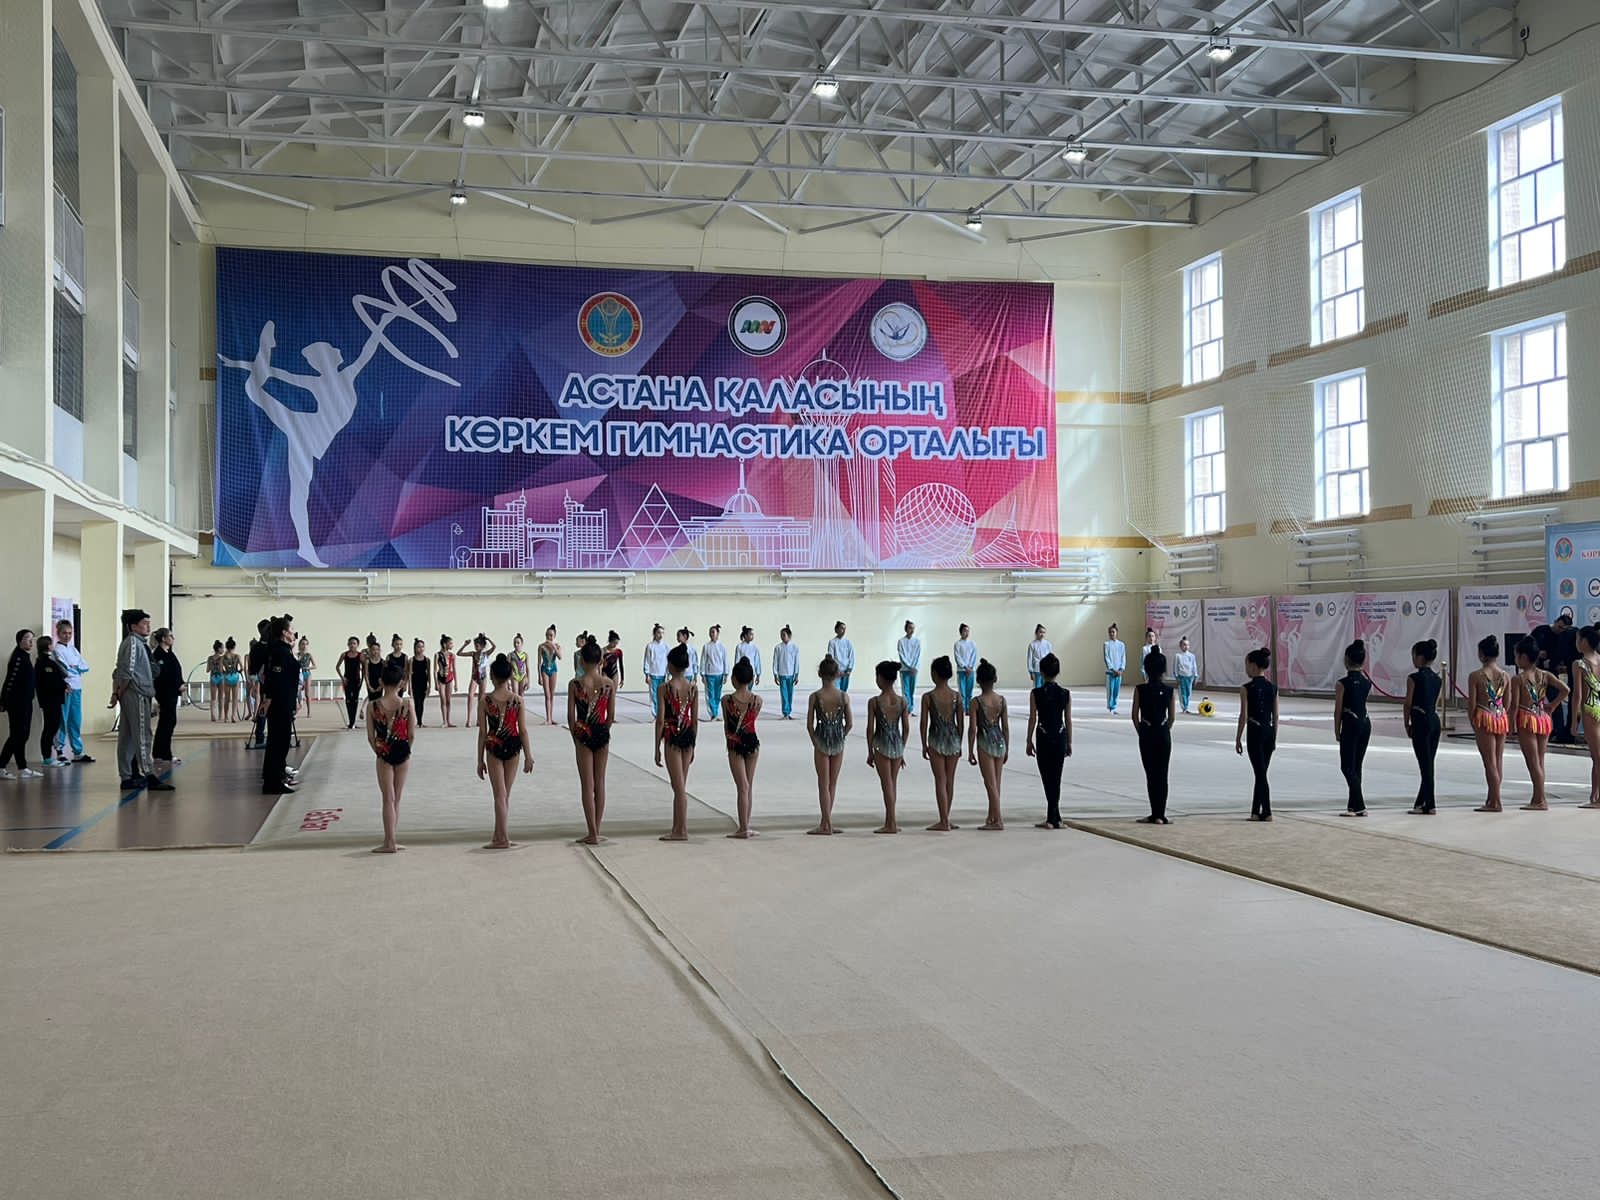 Астанада көркем гимнастика орталығы пайдалануға берілді